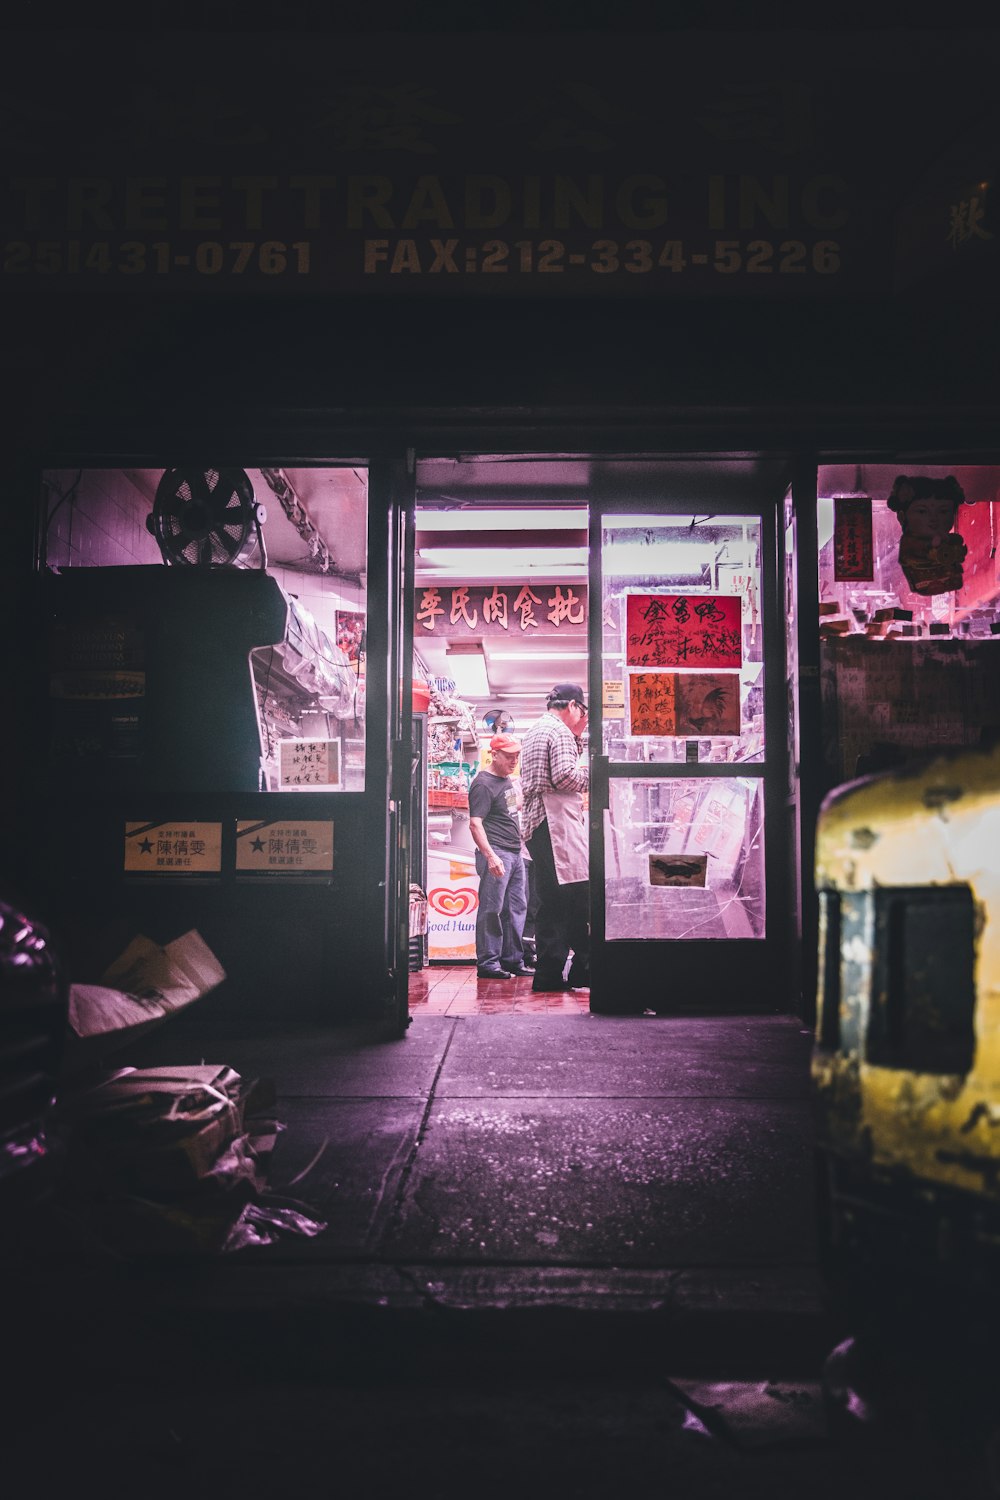 Dos hombres parados dentro de la tienda durante la noche